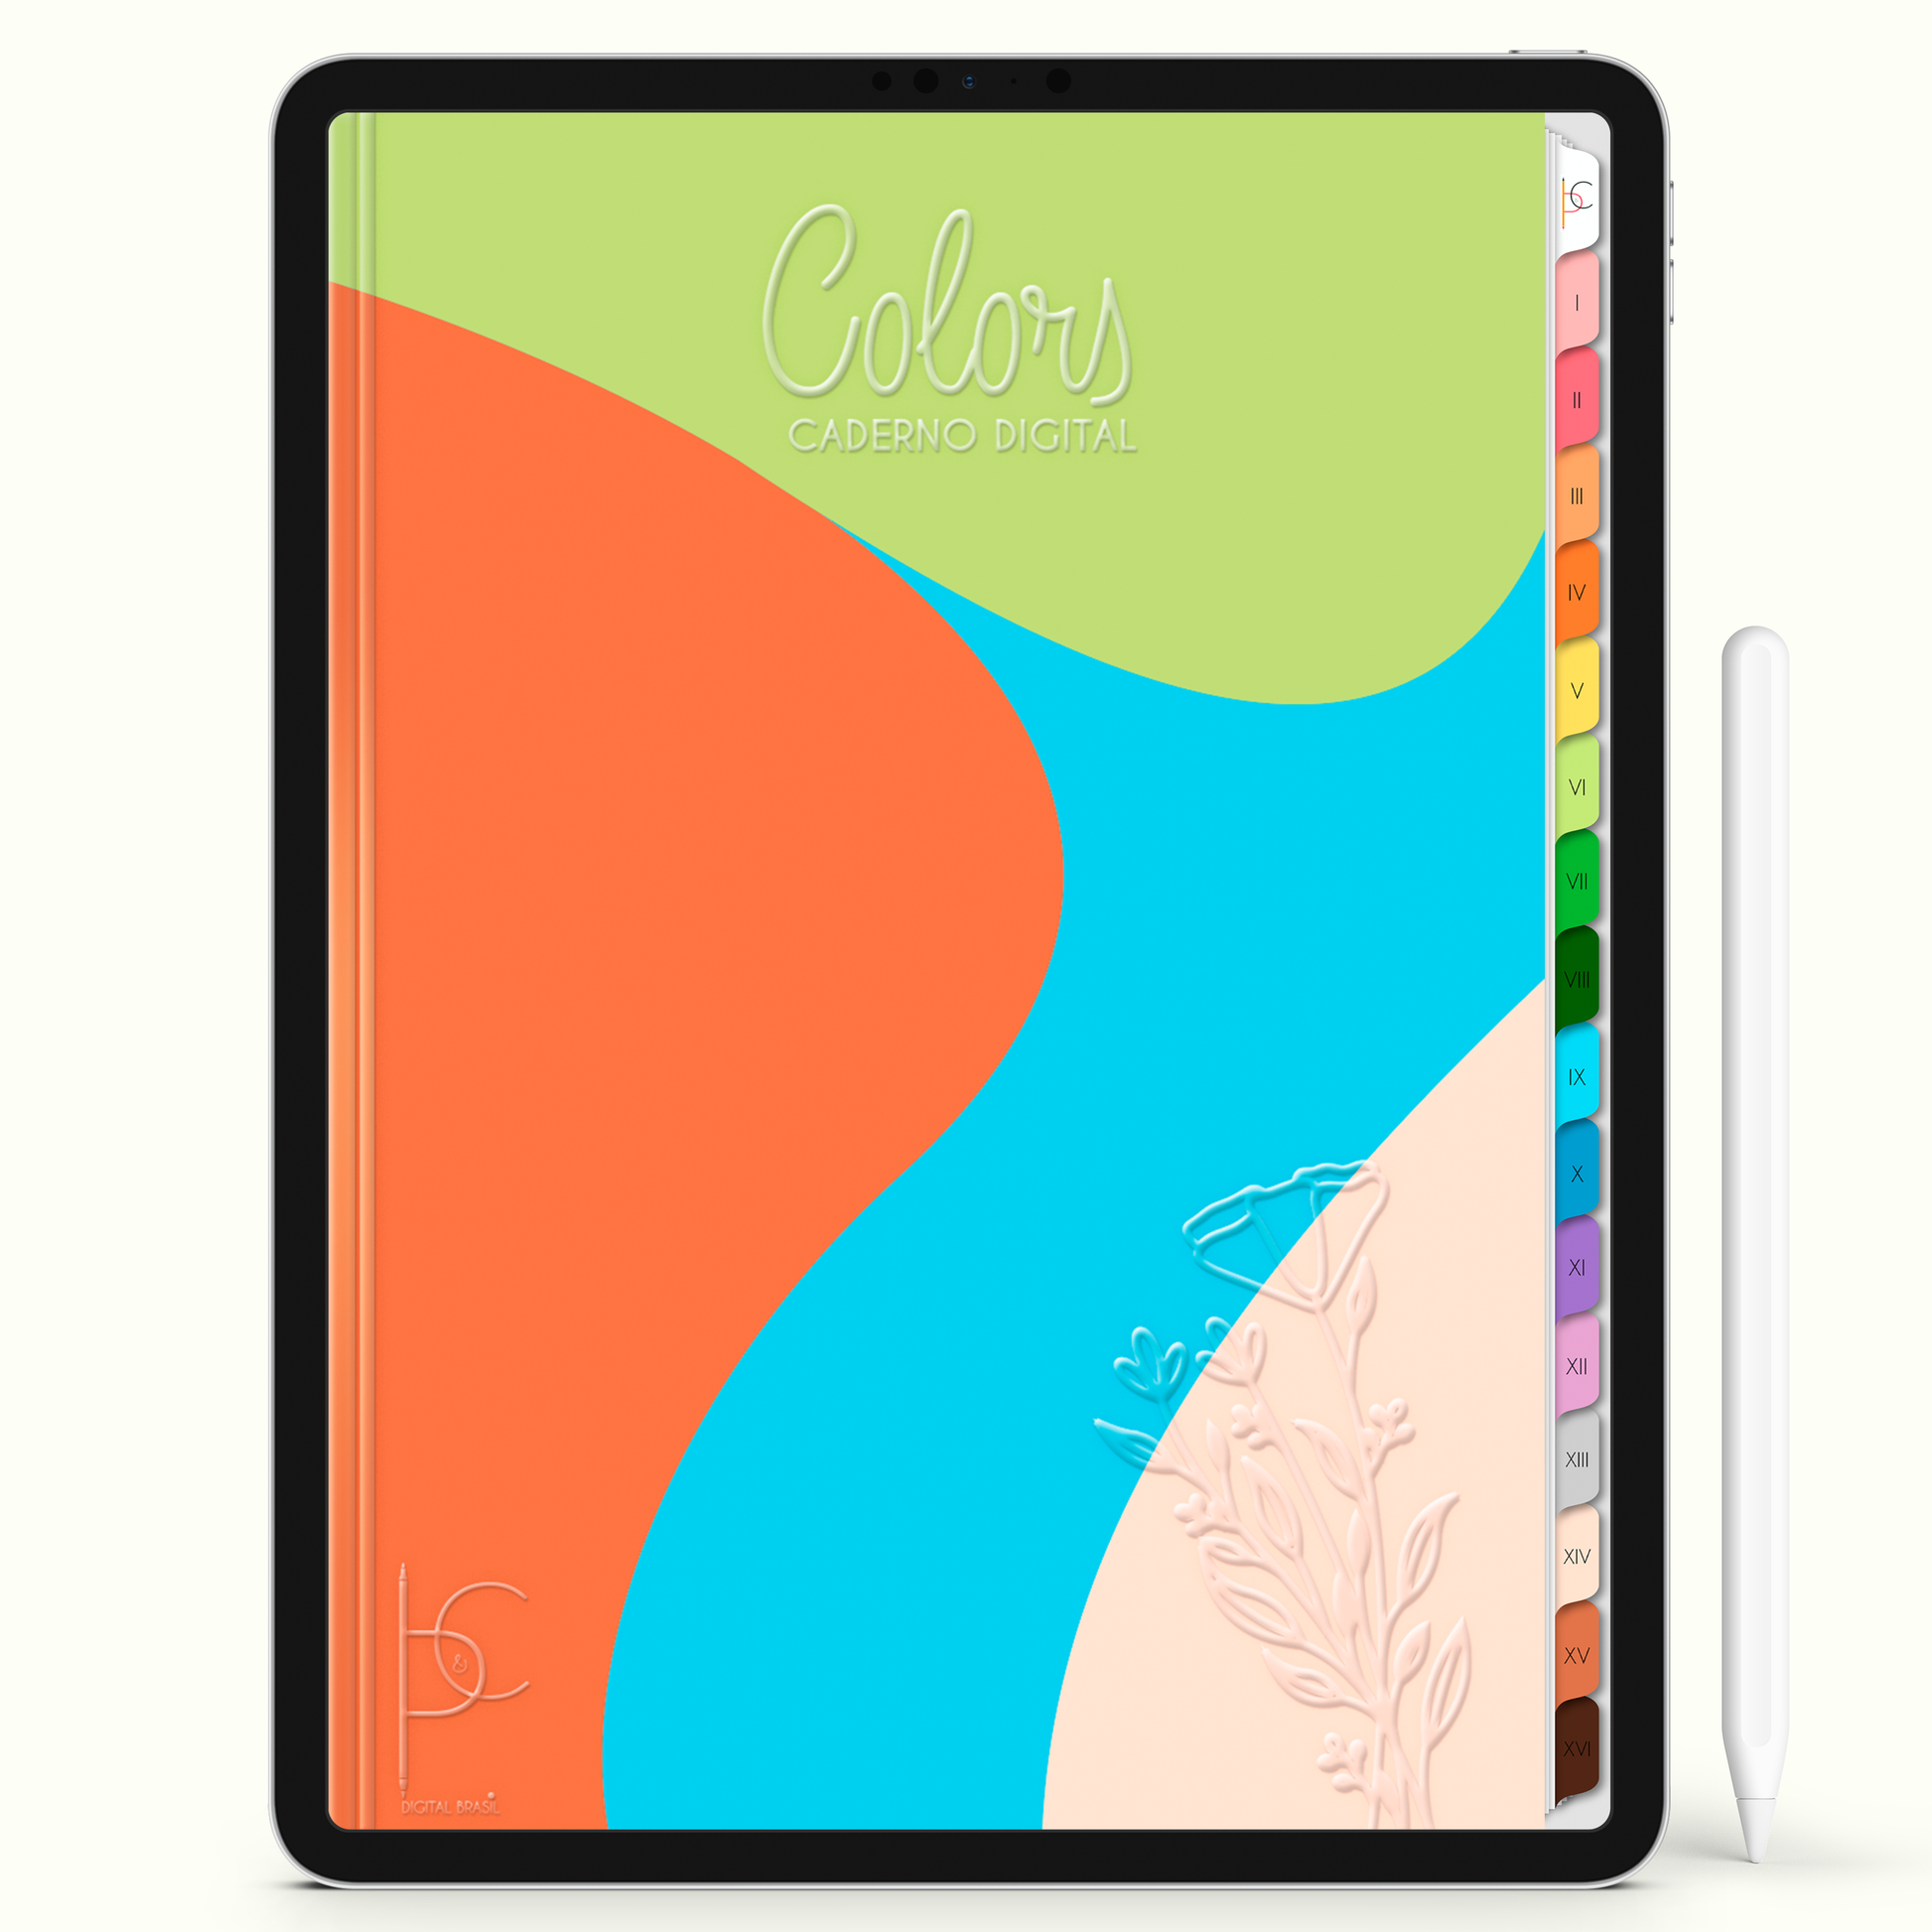 Caderno Digital Colors Resumos e Estudos 16 Matérias • Para iPad e Tablet Android • Download instantâneo • Sustentável